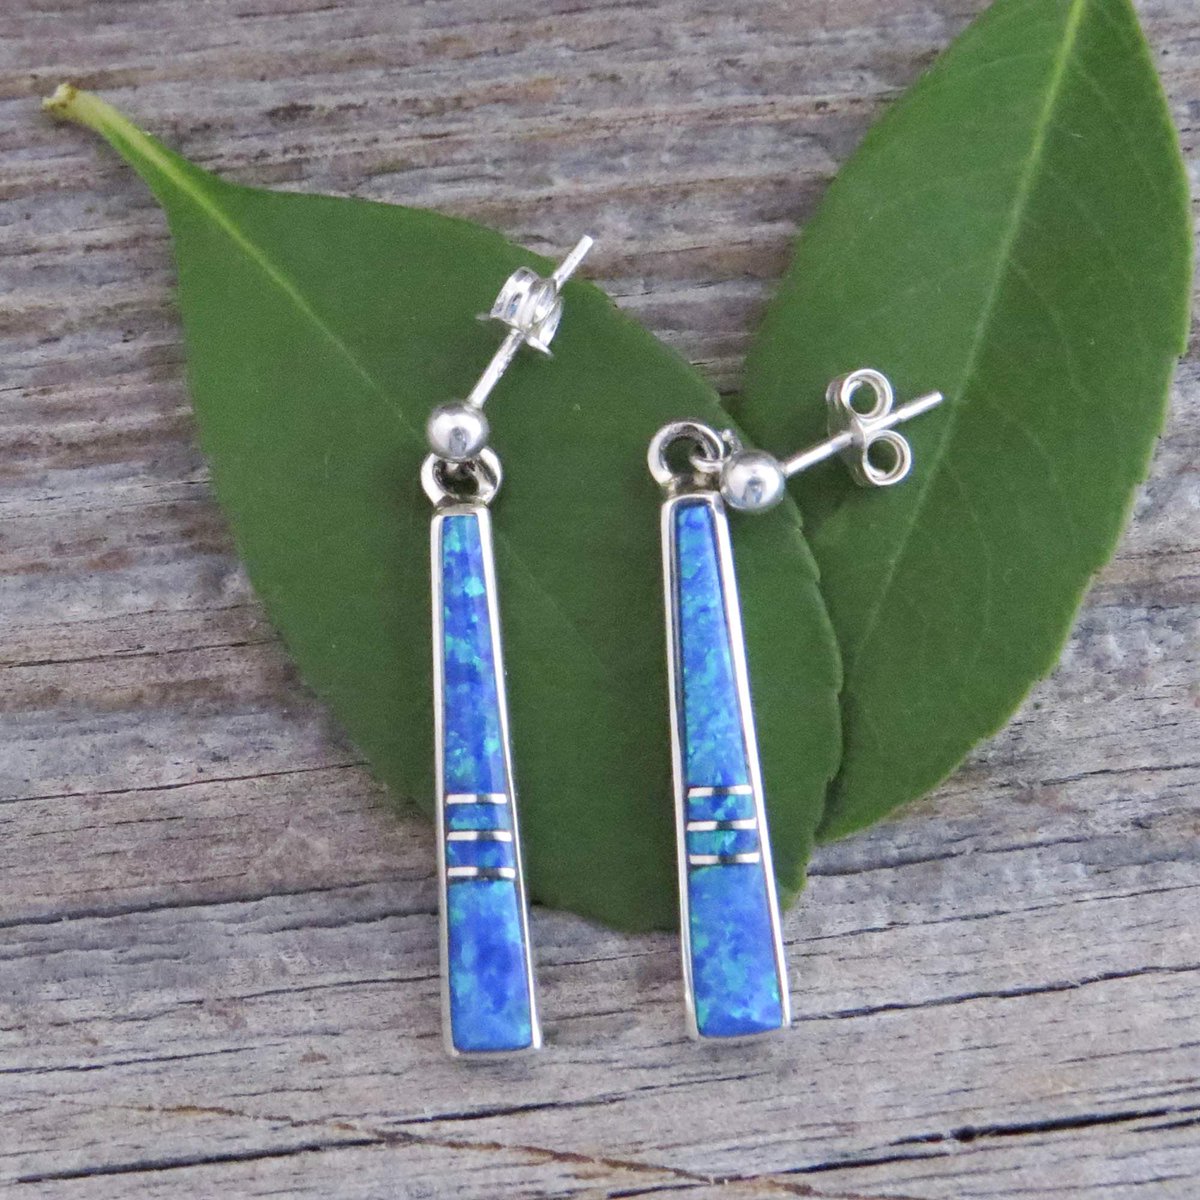 Elegant earrings just for you!  Blue Fire Opal Sterling Silver Earrings
<3 SAVE 30% SHOP HERE: etsy.me/3mJugmO
#etsyshop #etsyjewelry #opalearrings #blueearrings #postearrings #navajoearrings #nativeamericanjewelry #kokopellitraders